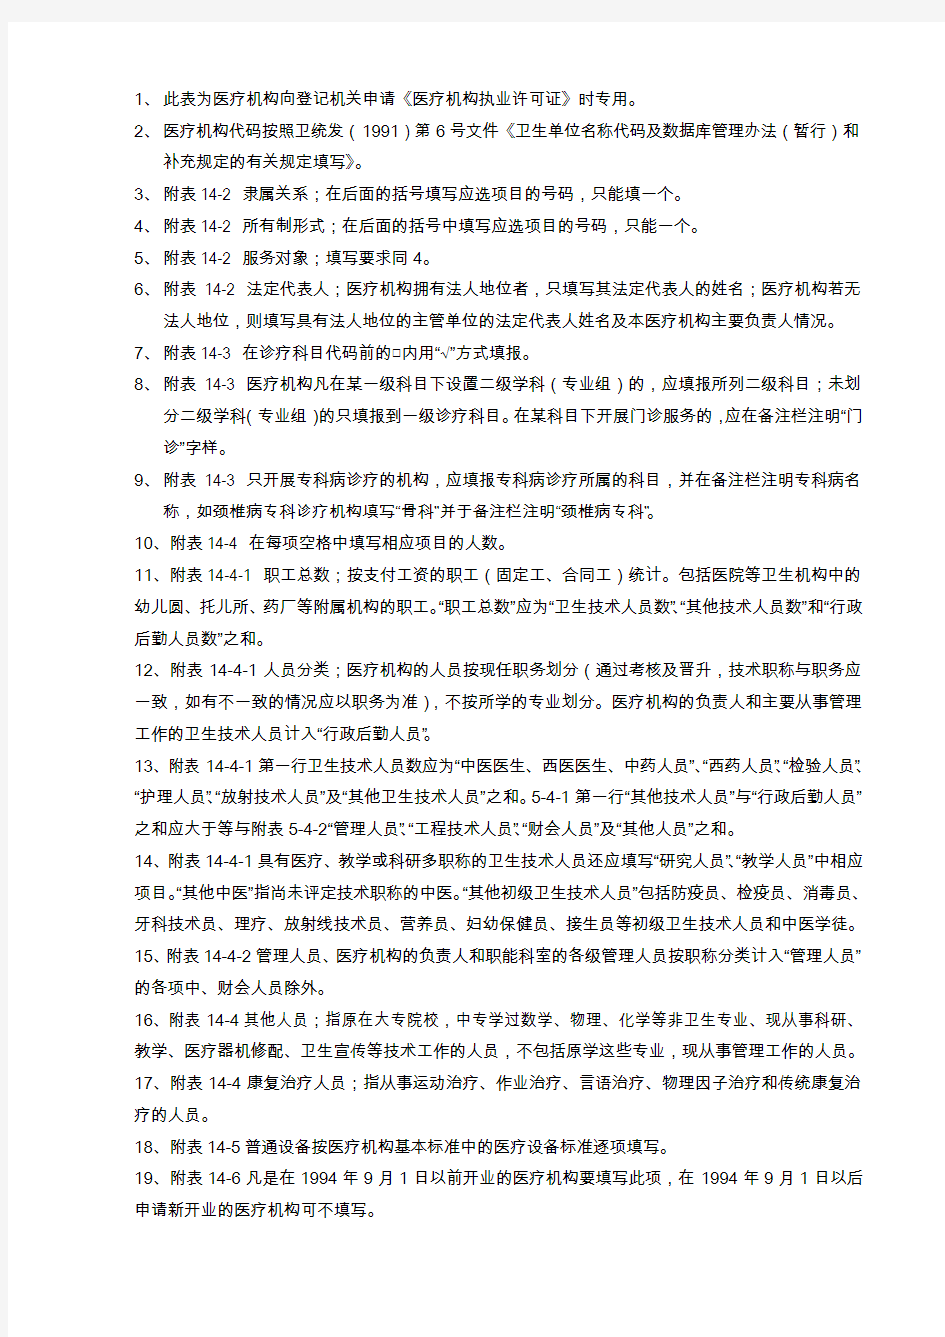 郑州市中医医疗机构校验申请书 申请医疗机构名称 (章) 法定代表人